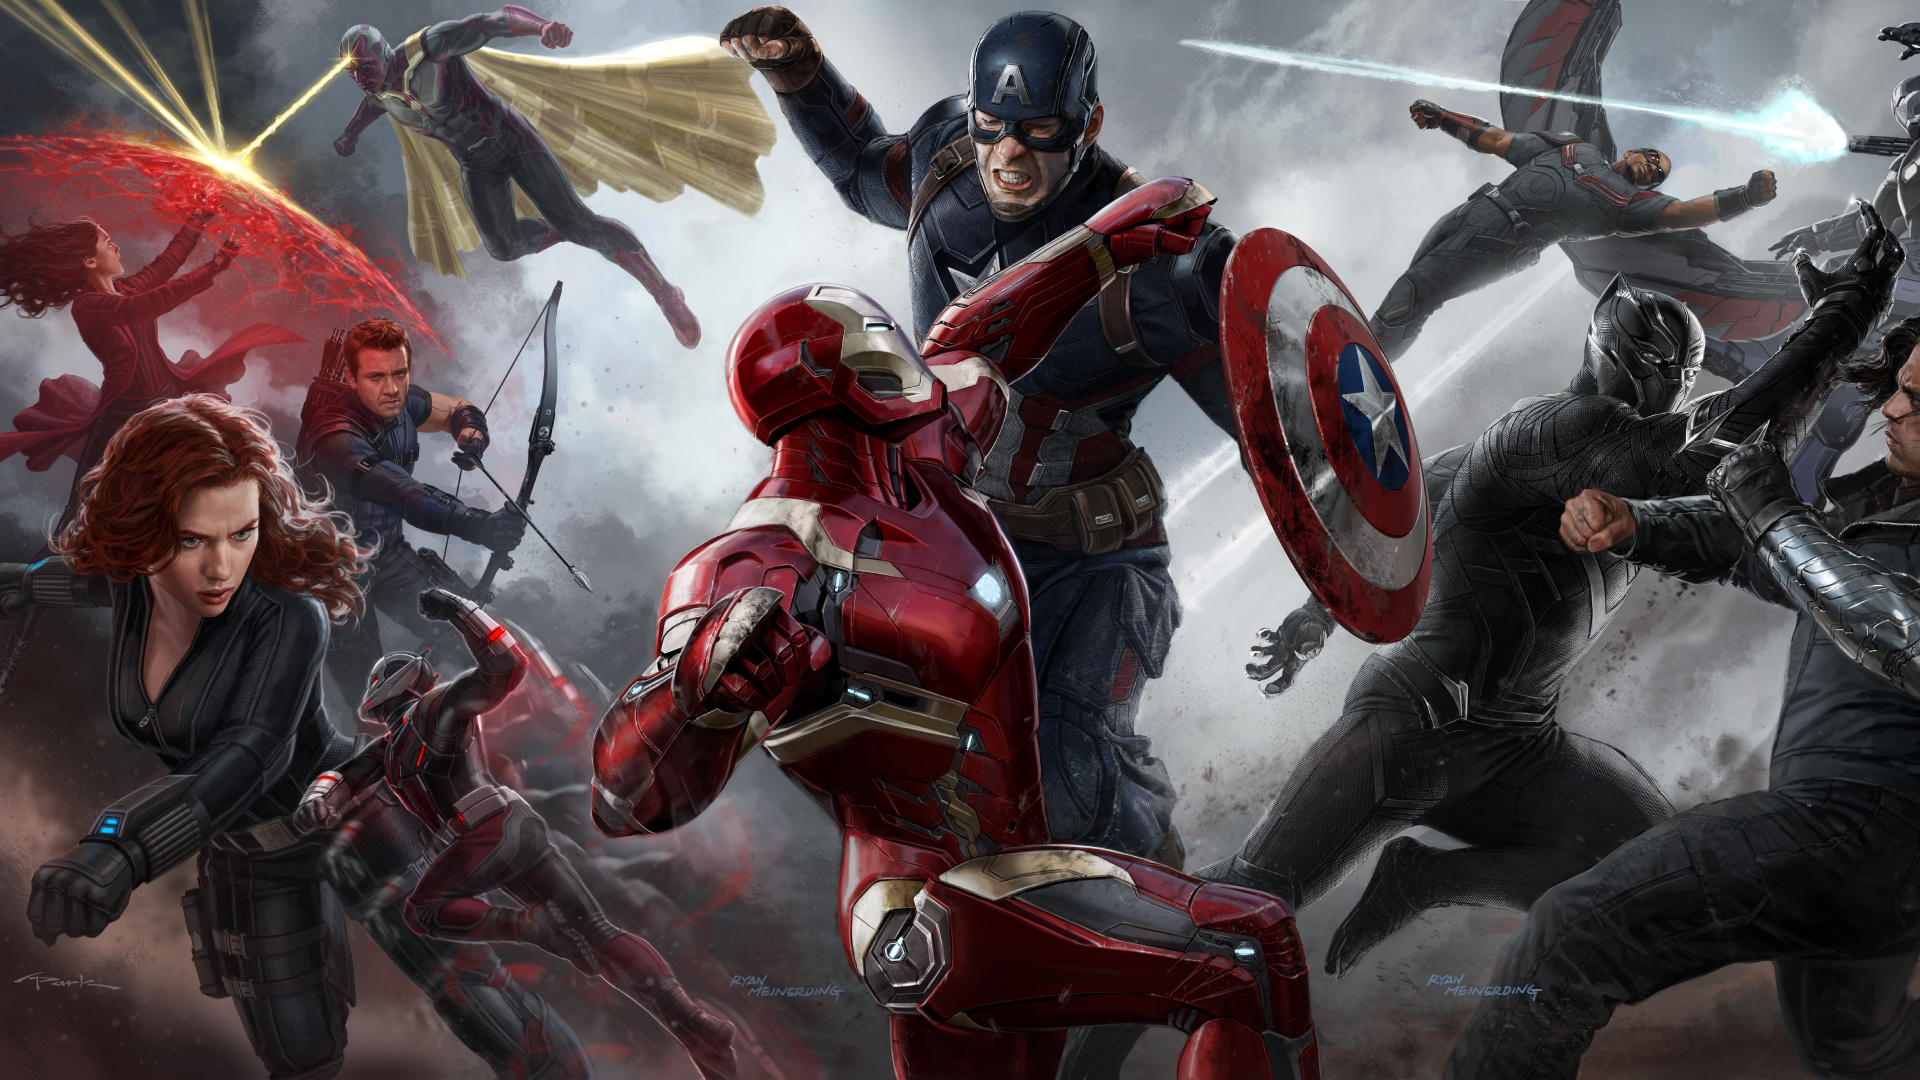 El Capitán América De La Guerra Civil, Capitán América, Superhéroe, Juego de Pc, Marvel Studios. Wallpaper in 1920x1080 Resolution